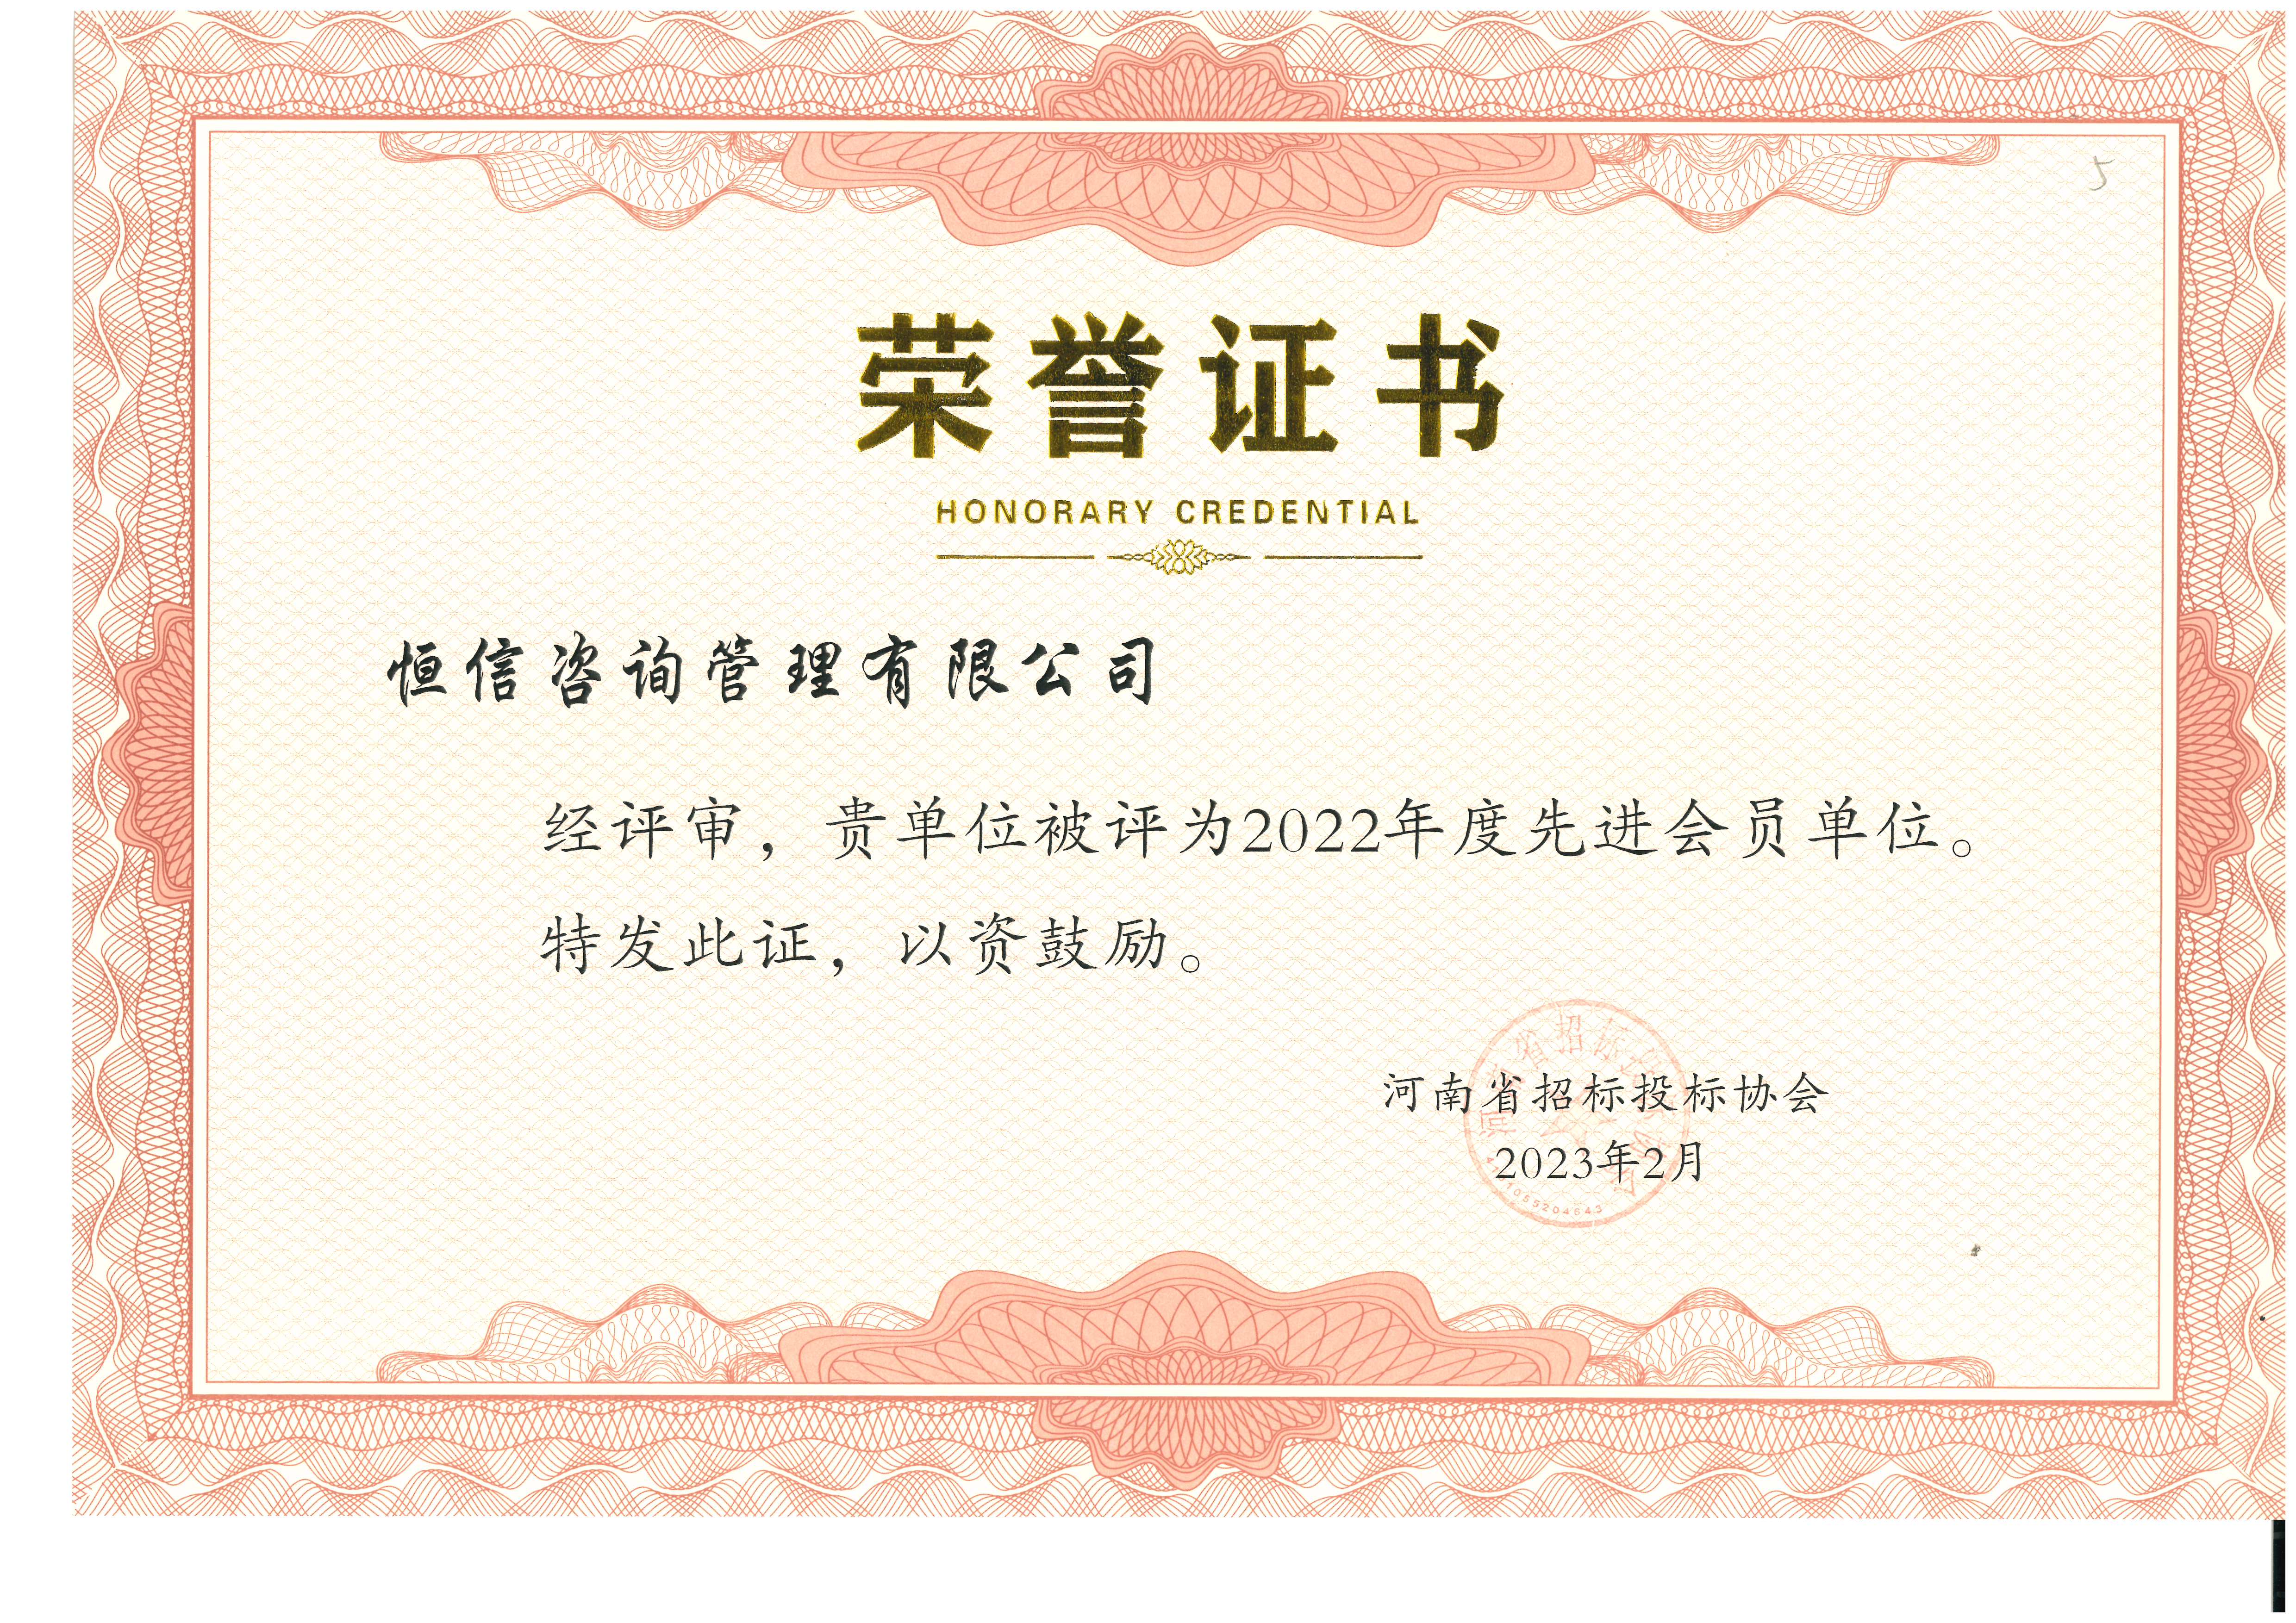 河南省招标投标协会2022年度先进会员单位